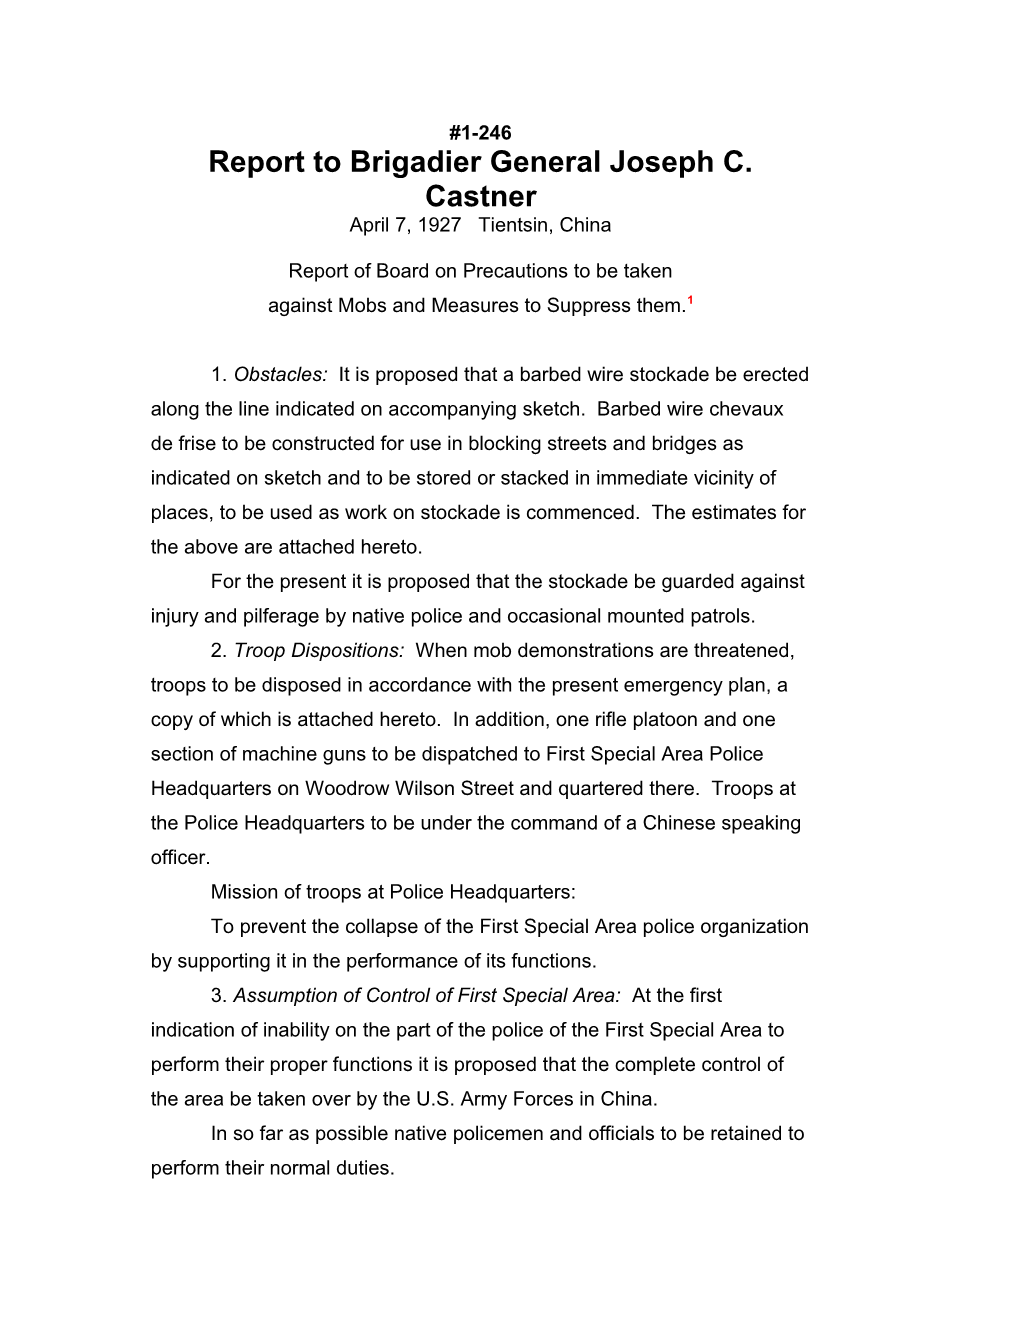 Report to Brigadier General Joseph C. Castner